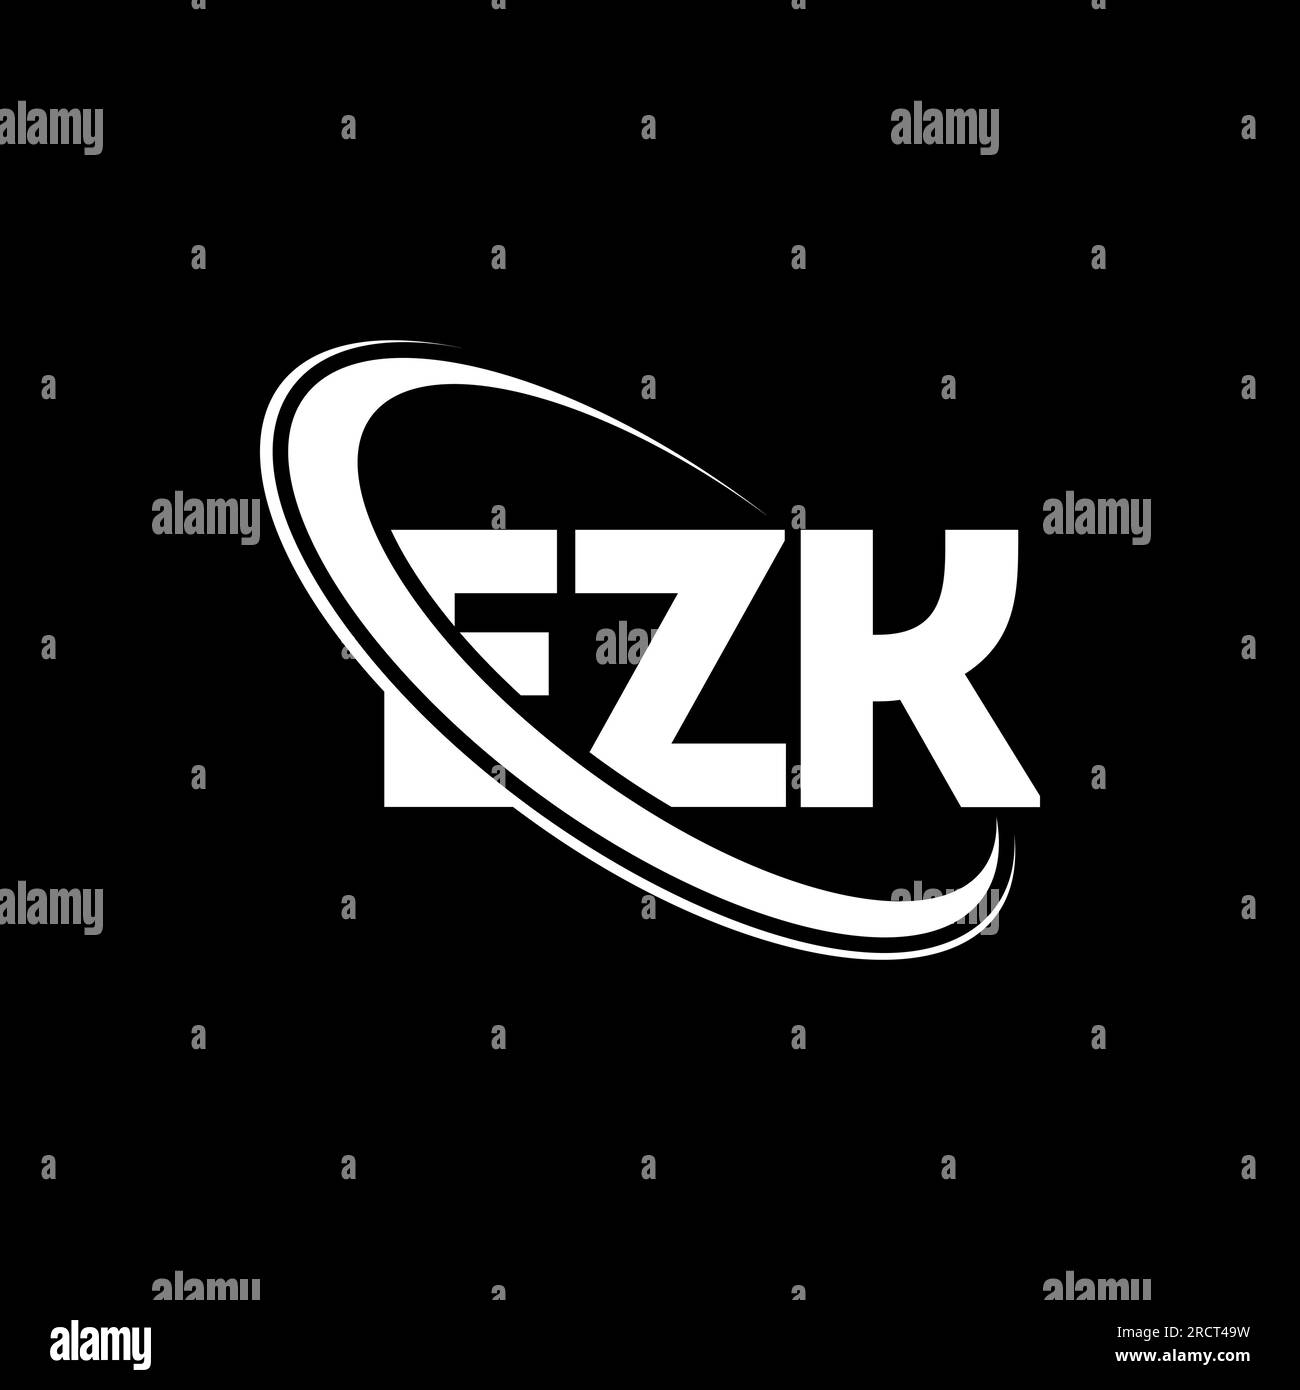 EZK-Logo. EZK-Brief. LOGO mit EZK-Buchstaben. Initialen EZK-Logo, verbunden mit Kreis und Monogramm-Logo in Großbuchstaben. EZK-Typografie für Technologie, Geschäfte Stock Vektor